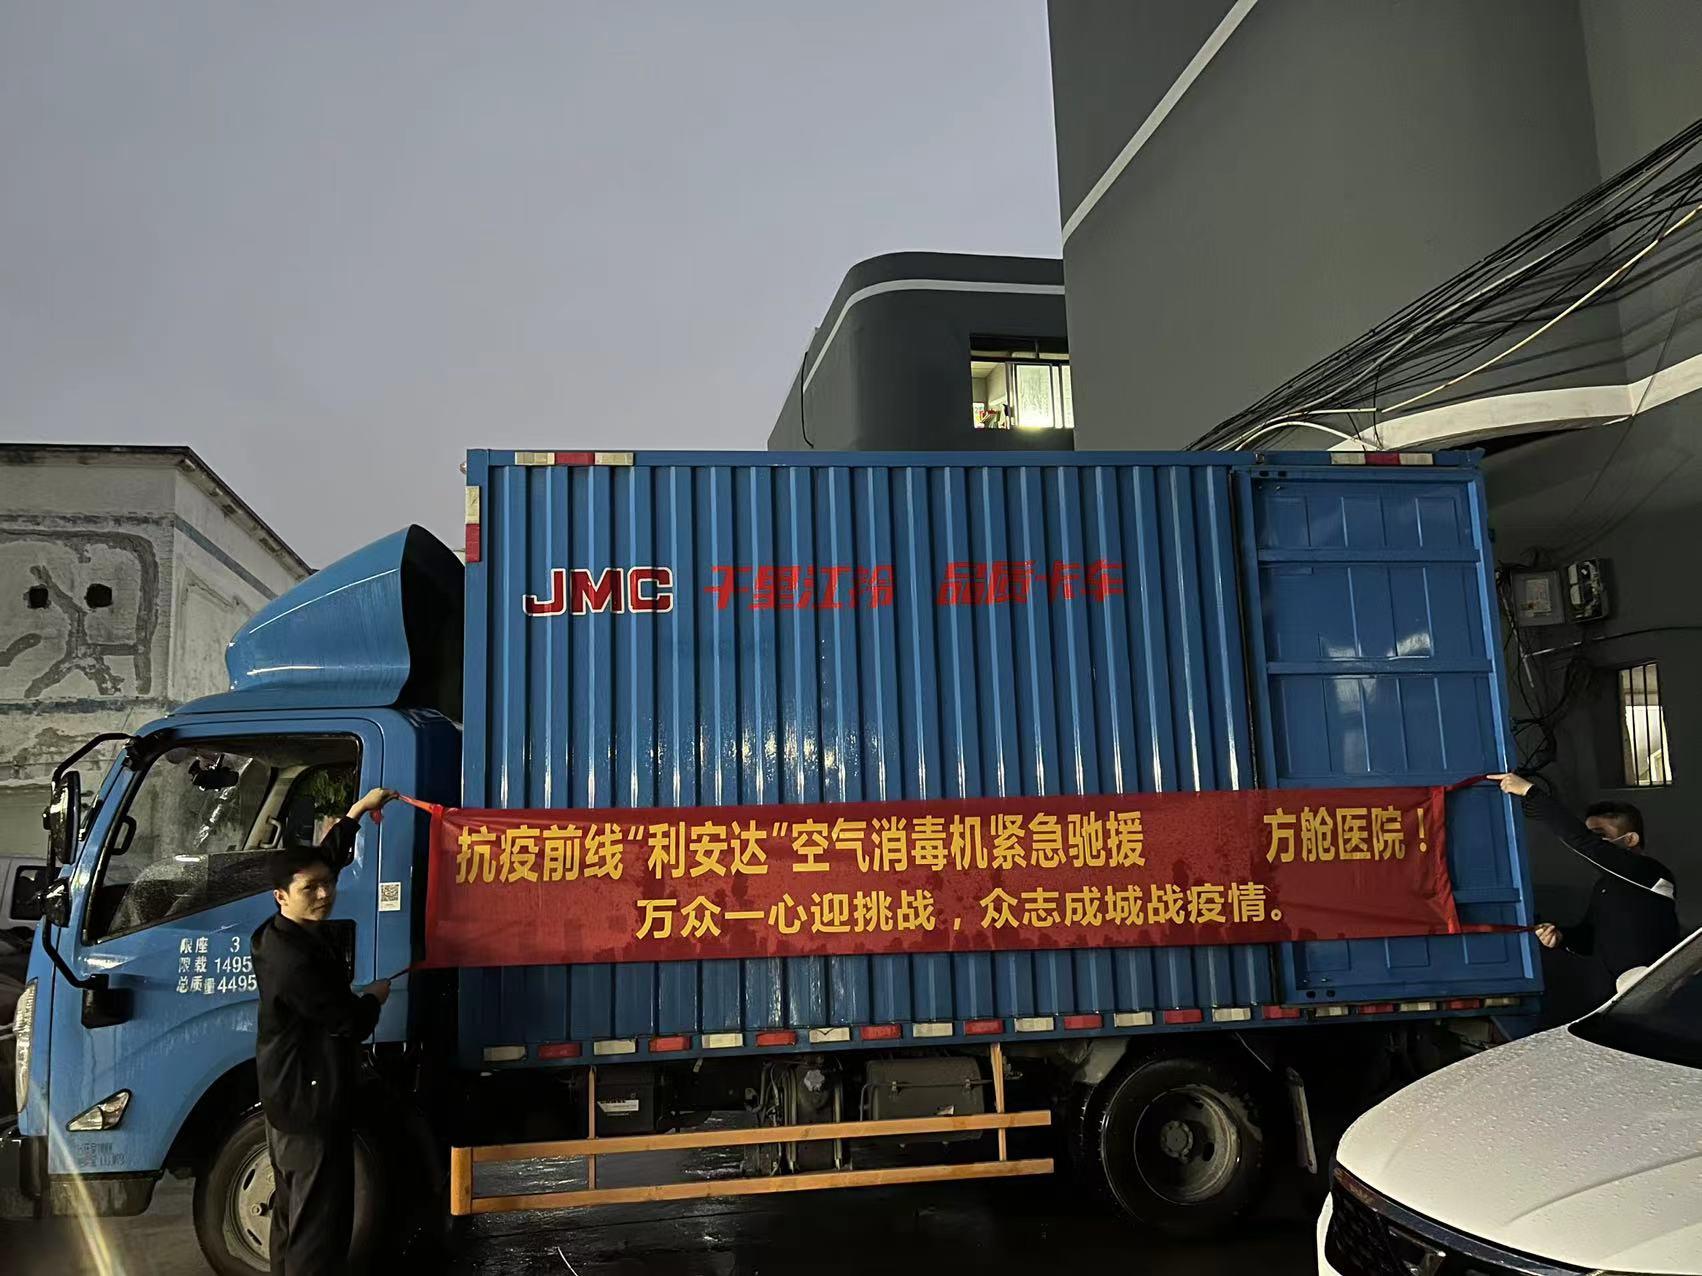 80台壁挂式空气消毒机发往广州从化